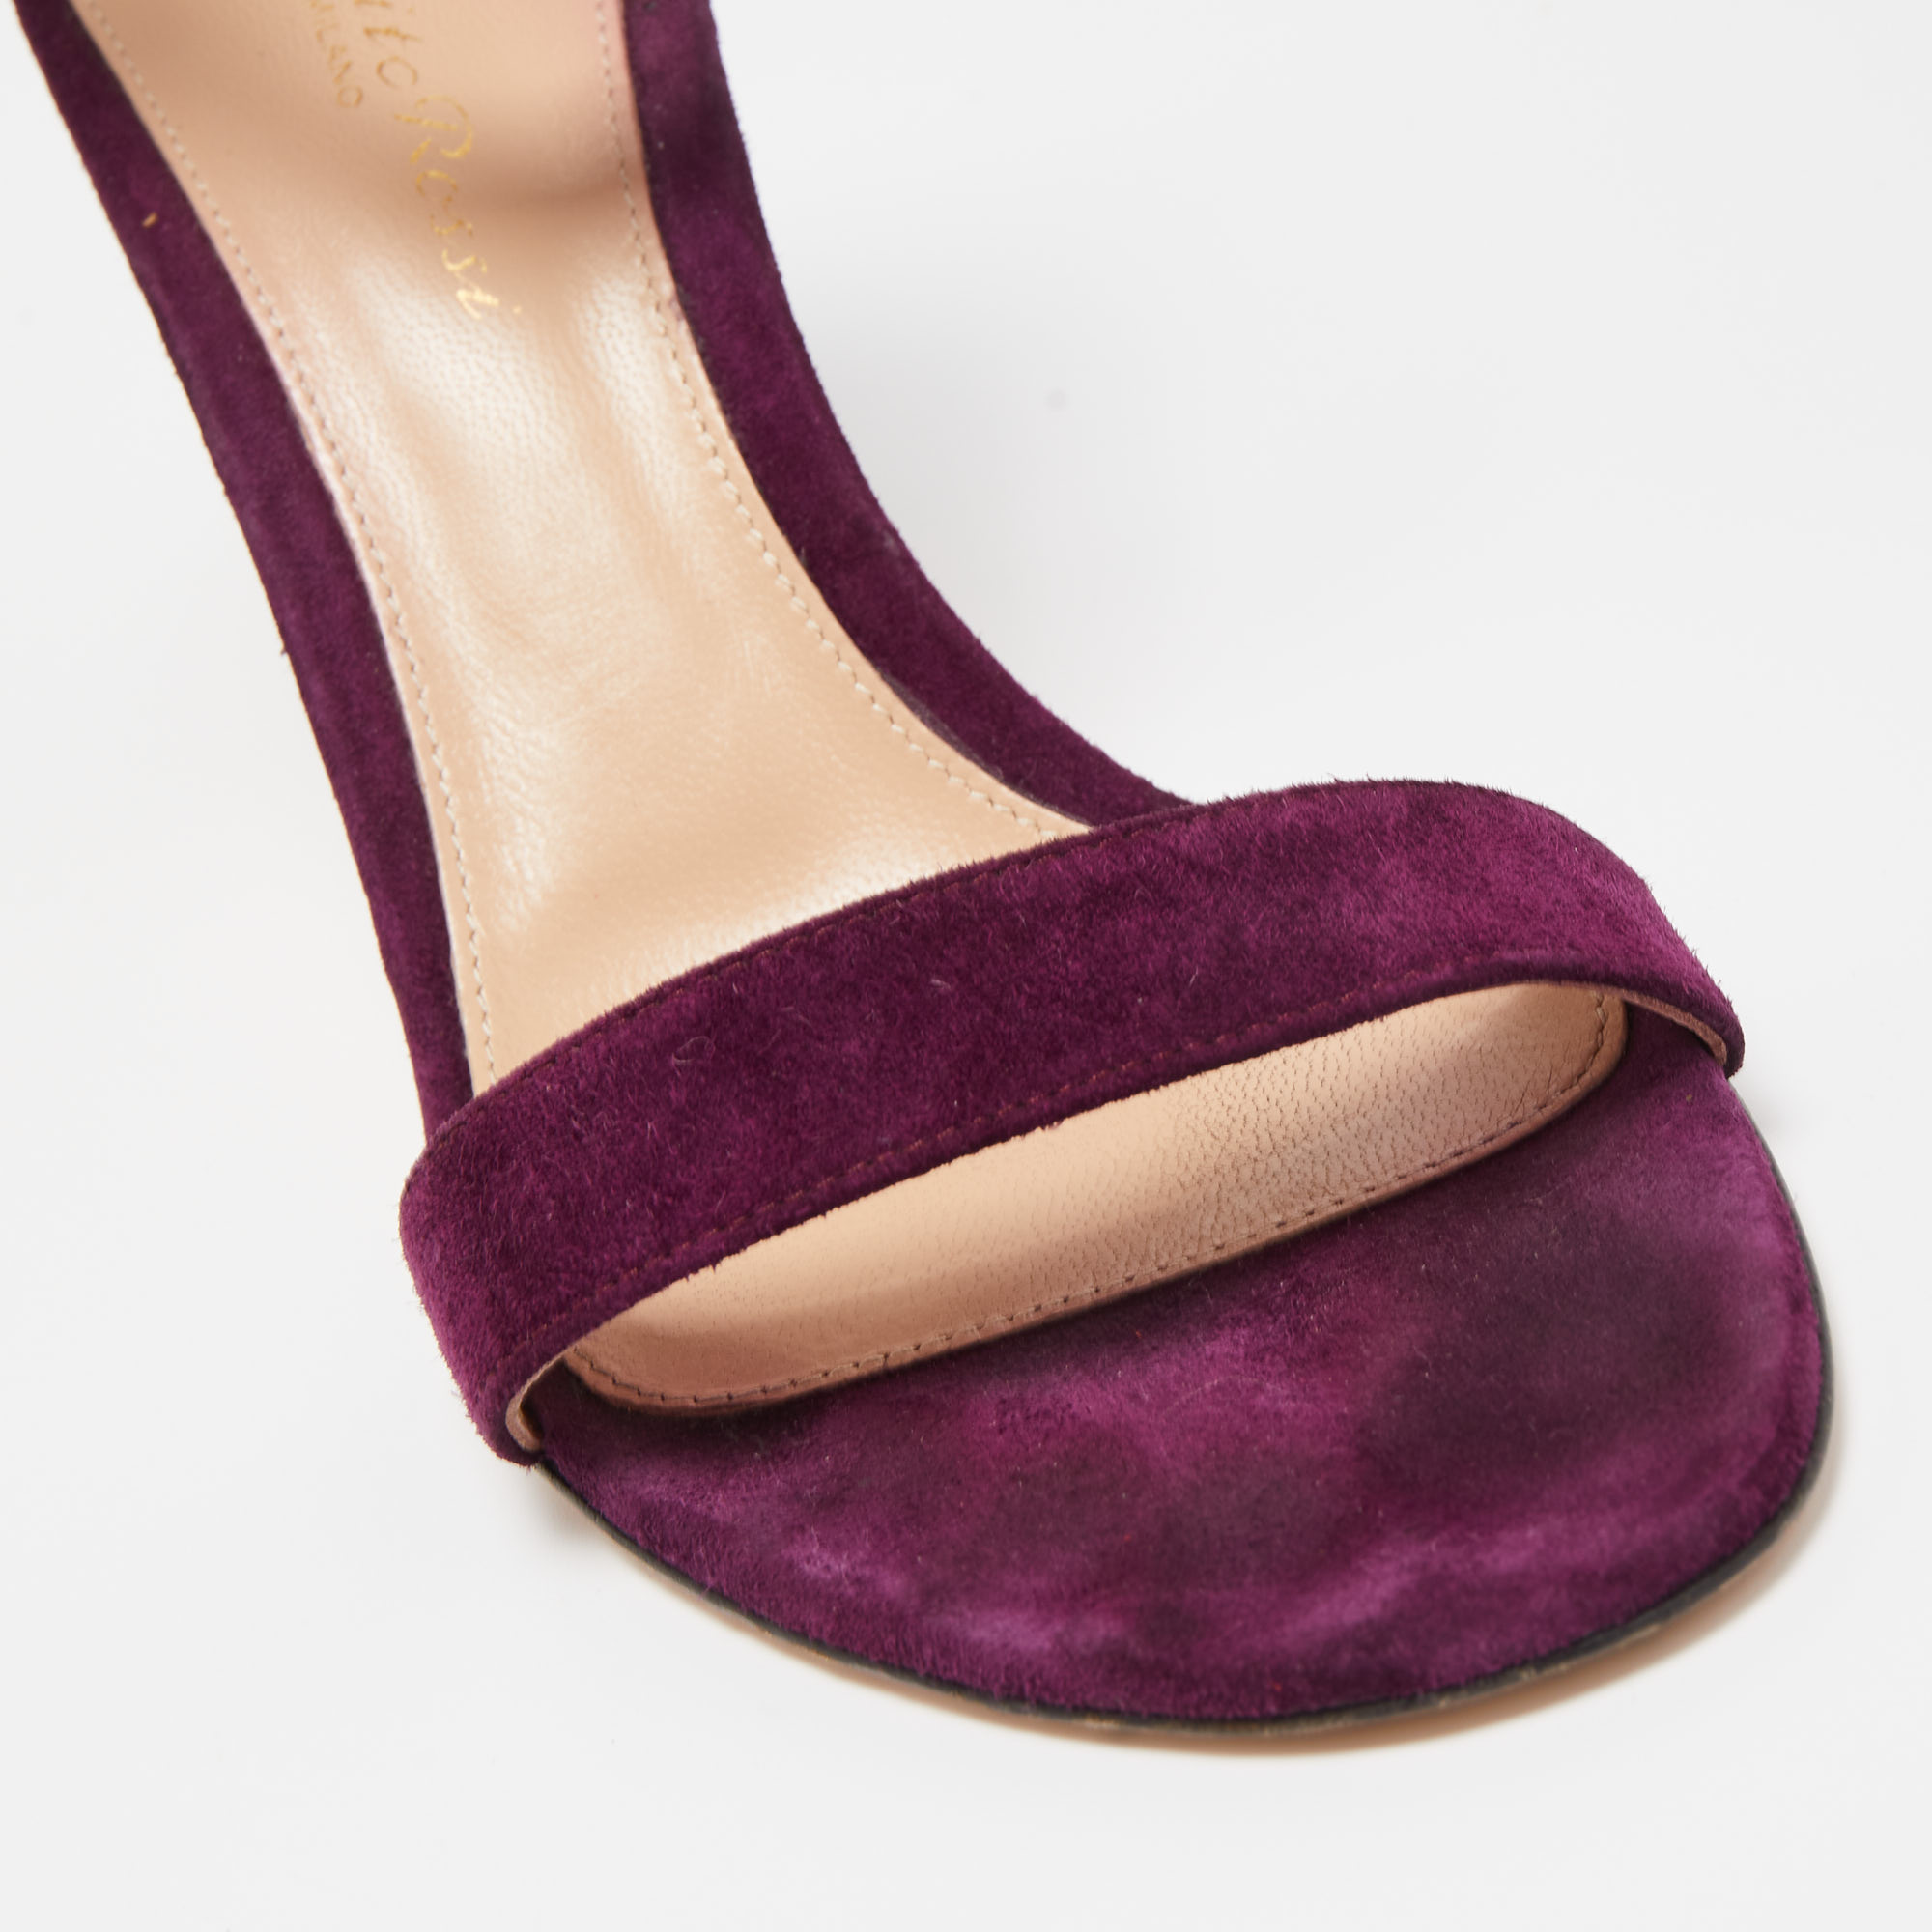 Gianvito Rossi Purple Suede Portofino Ankle Strap Sandals Size 37.5